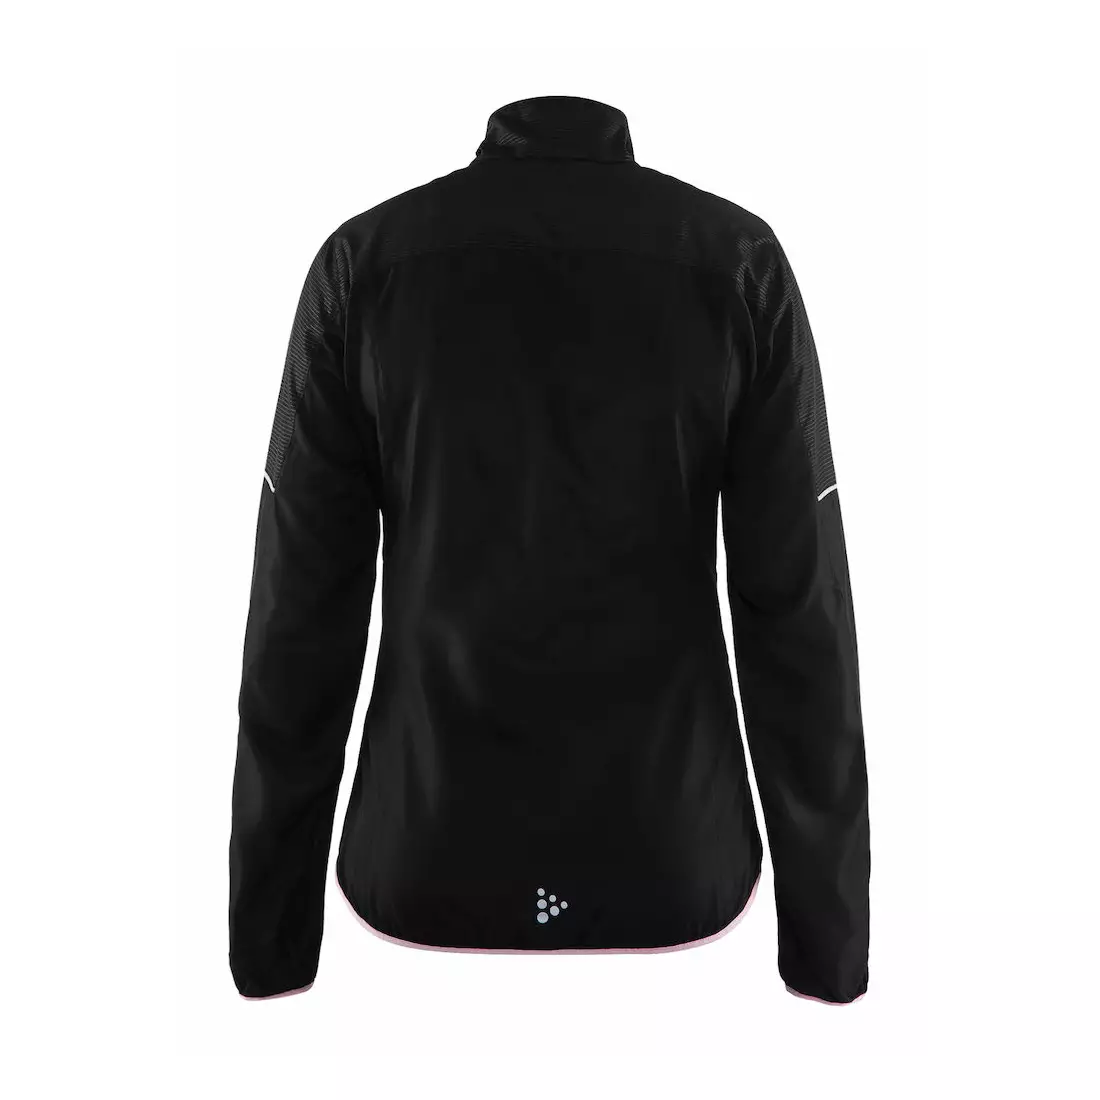 CRAFT RADIATE - jachetă de damă, jachetă pentru alergare 1905380-999701